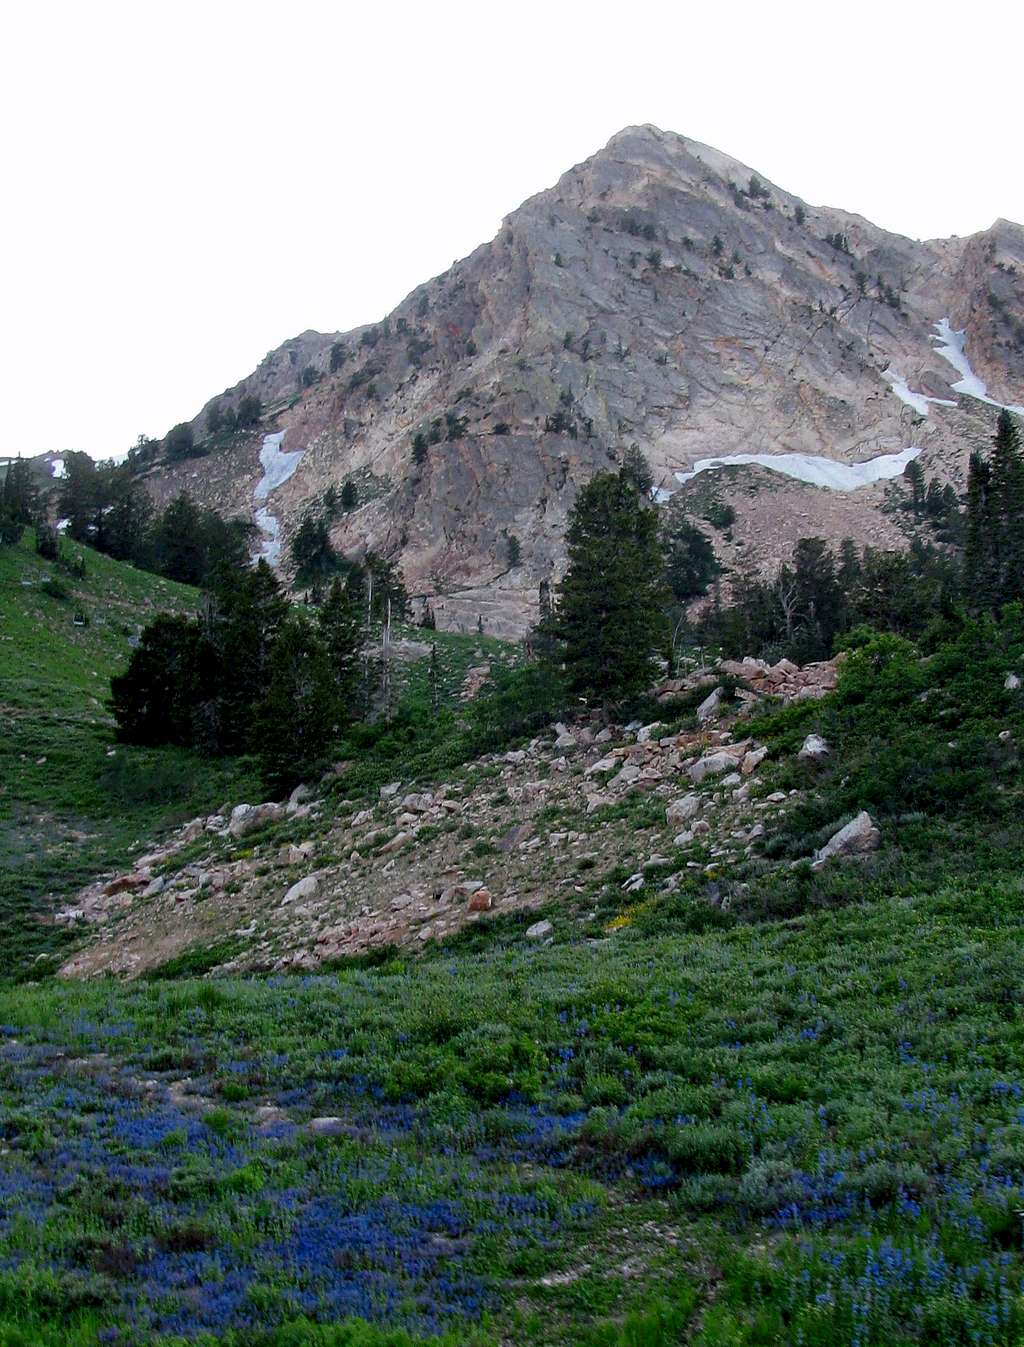 Mount Ogden over wildflowers